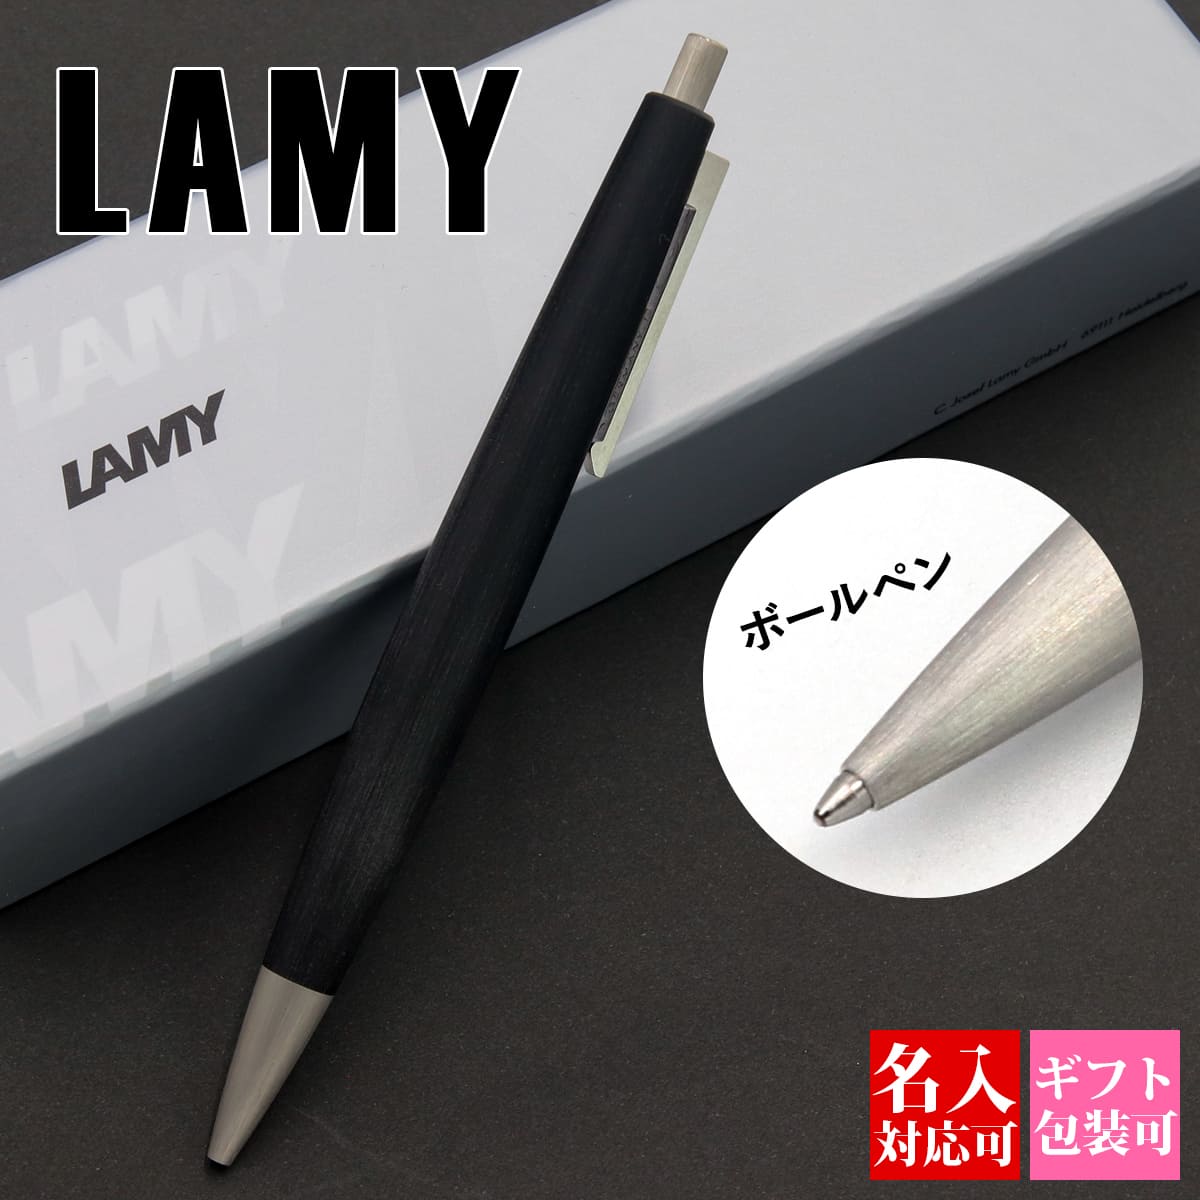 Lamy Lamy ラミー ペン ボールペン 油性ボールペン 00 黒 筆記用具 文房具 メンズ レディース おしゃれ シンプル 新品 正規品 ギフト プレゼント 1本から 通販 最新な